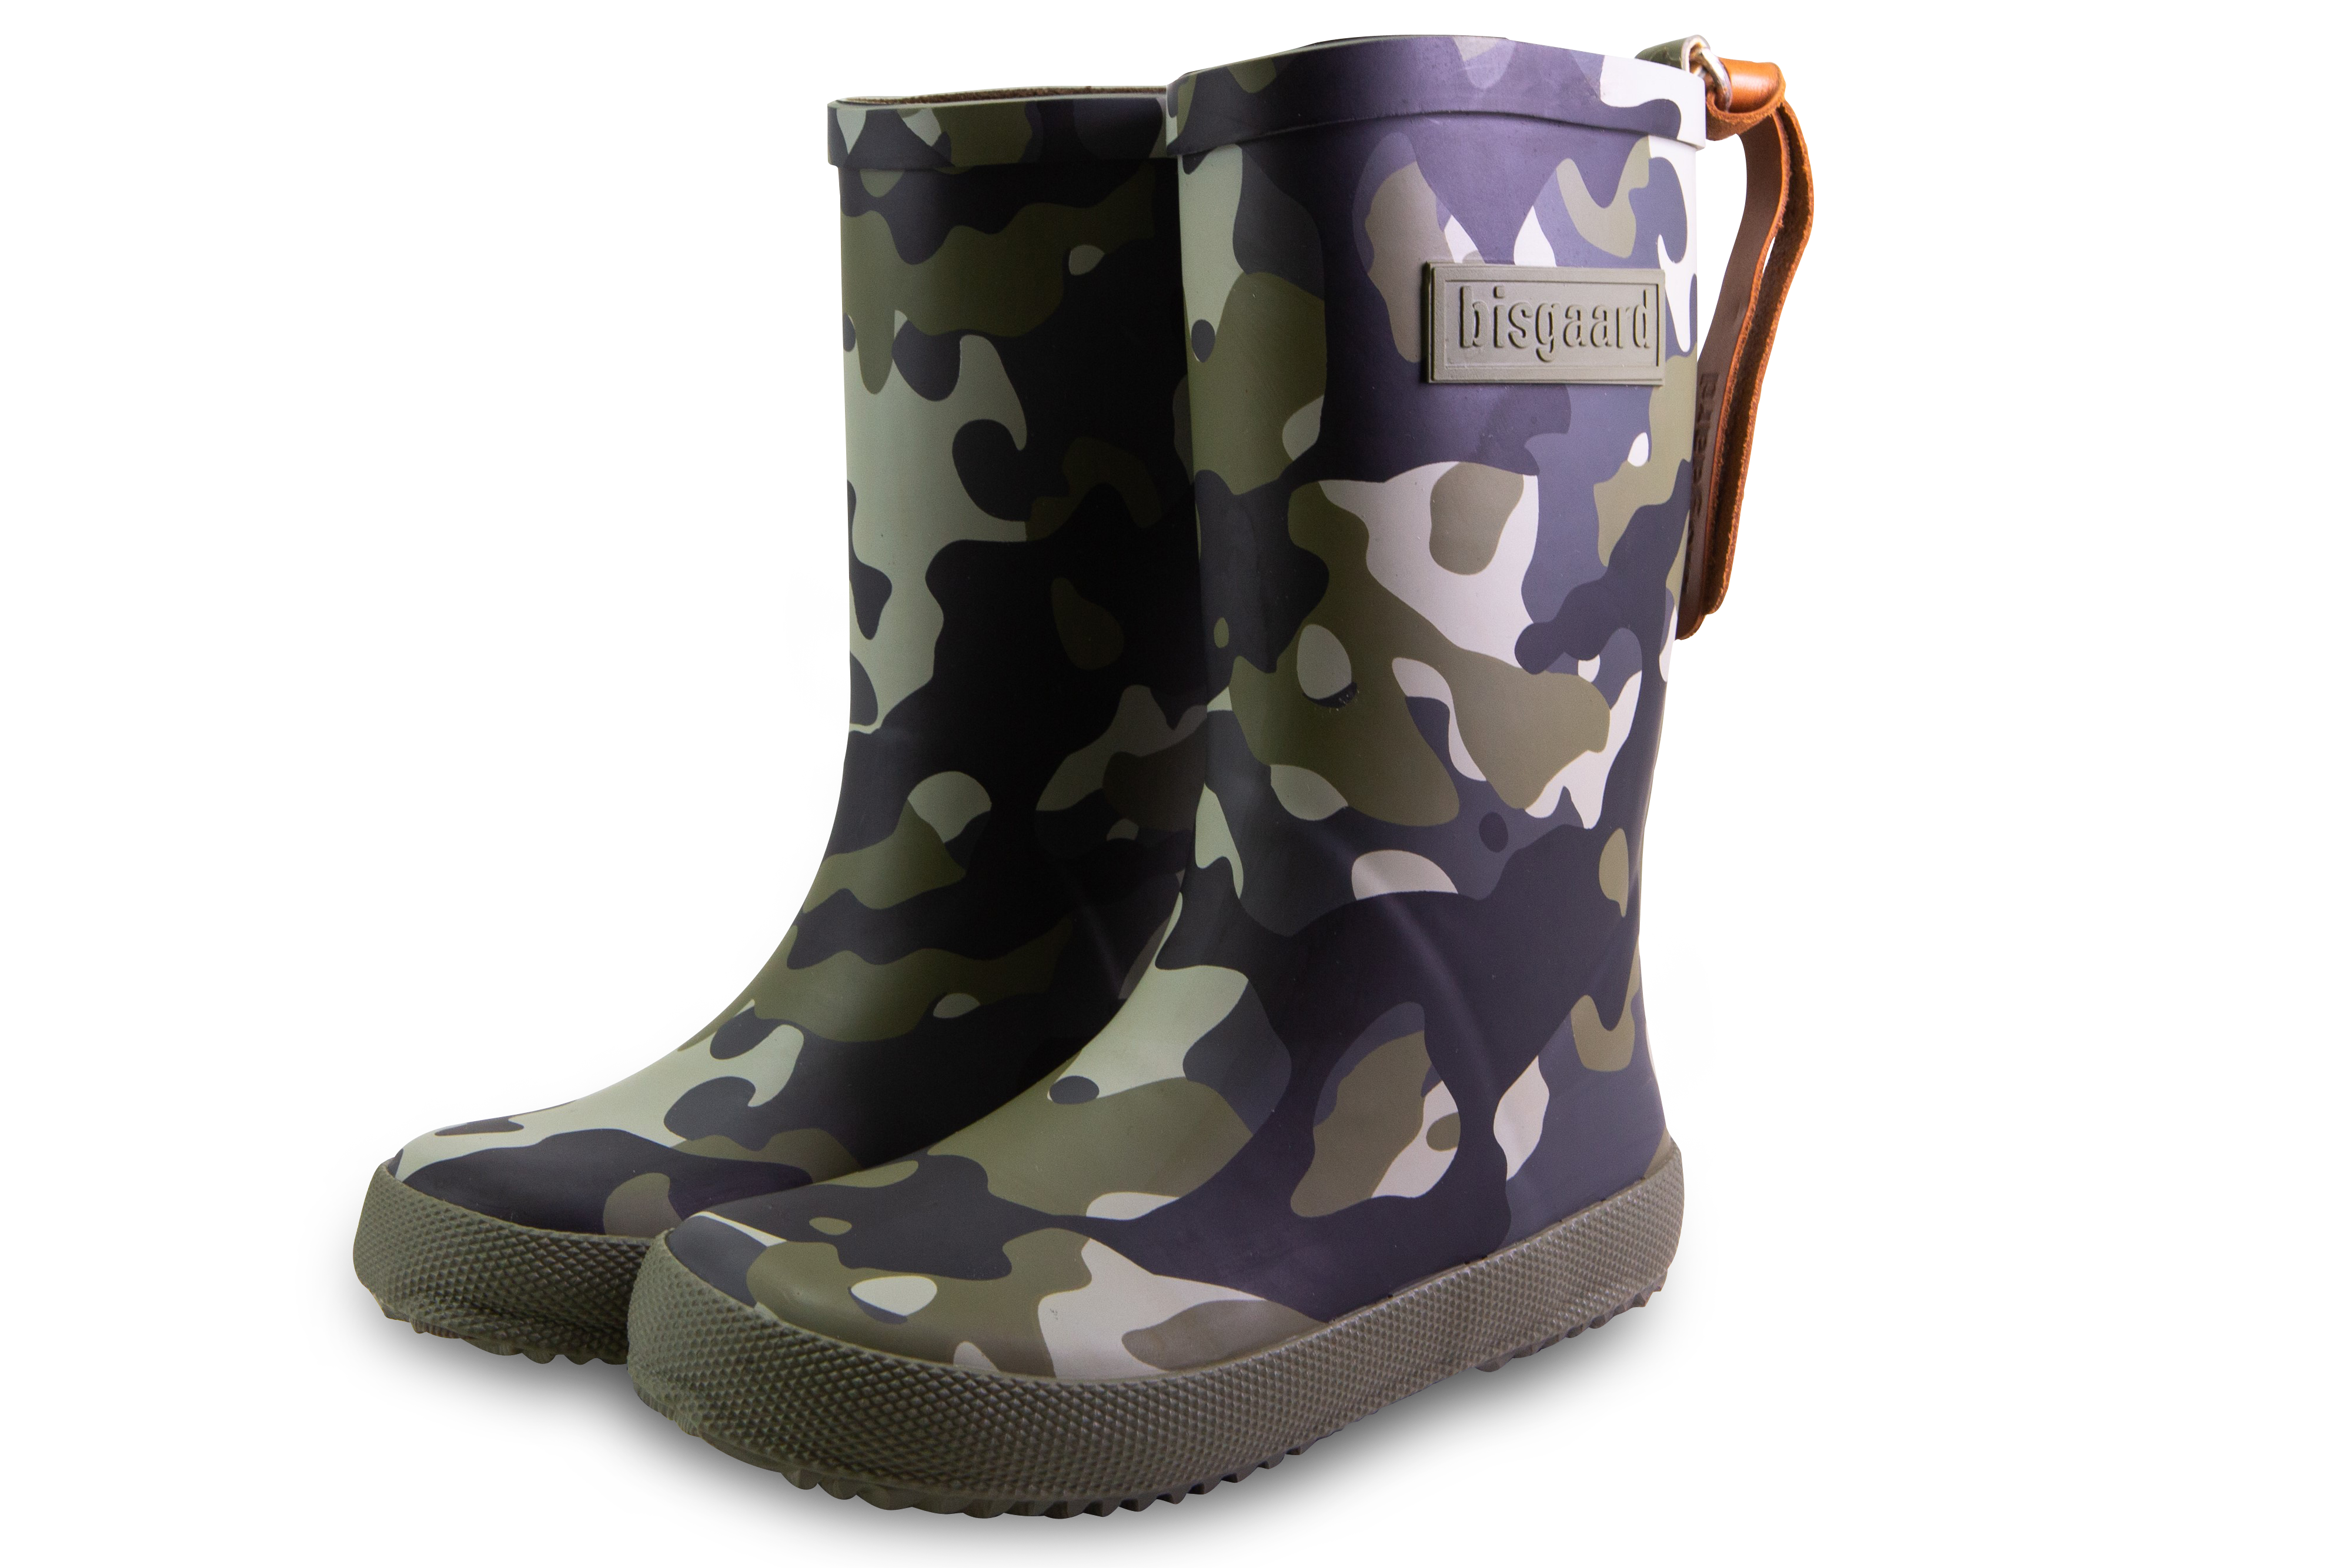 Regenstiefel Fashion Boot, camouflage